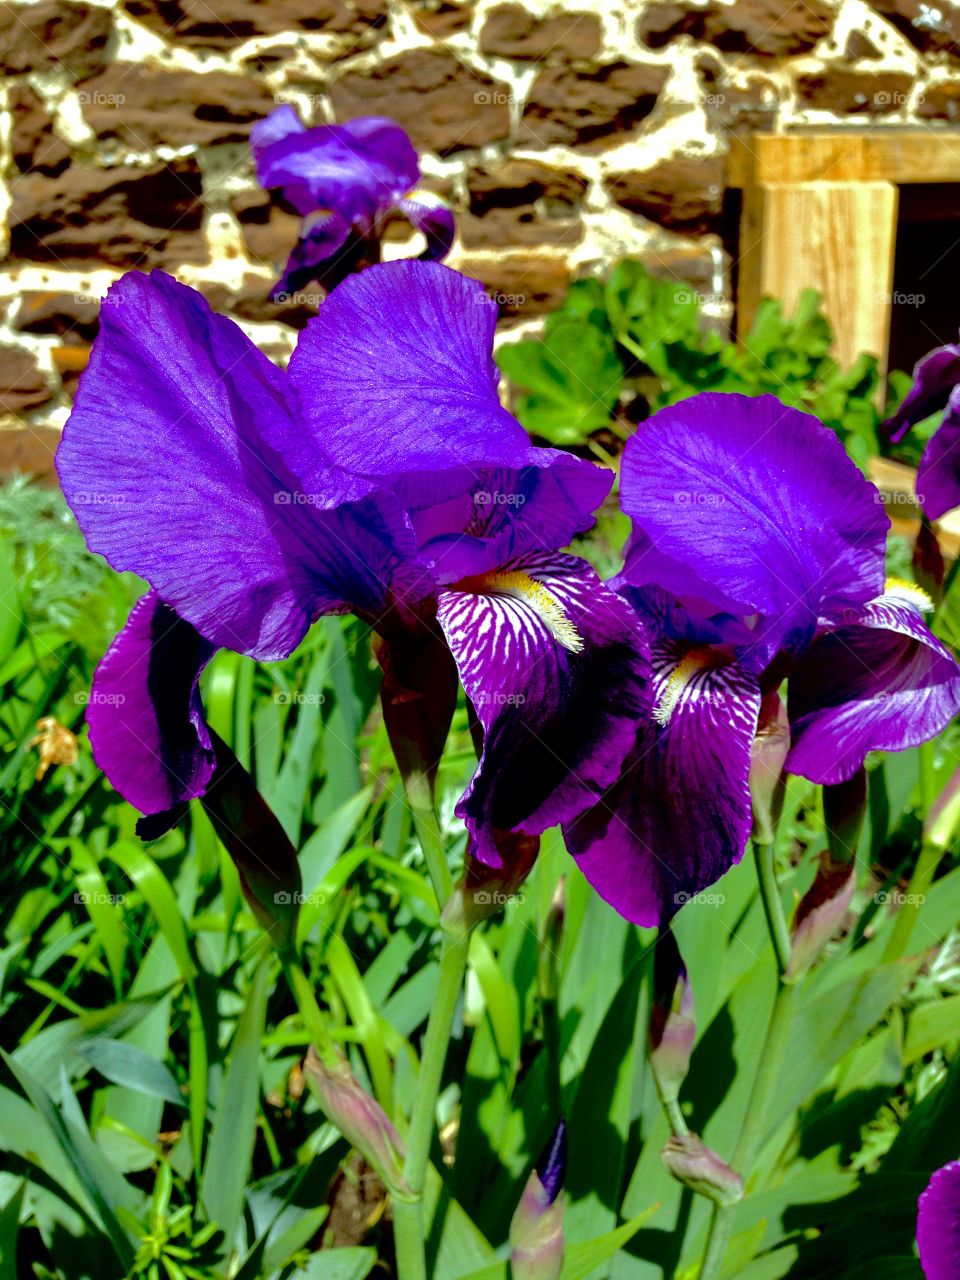 Purple irises 